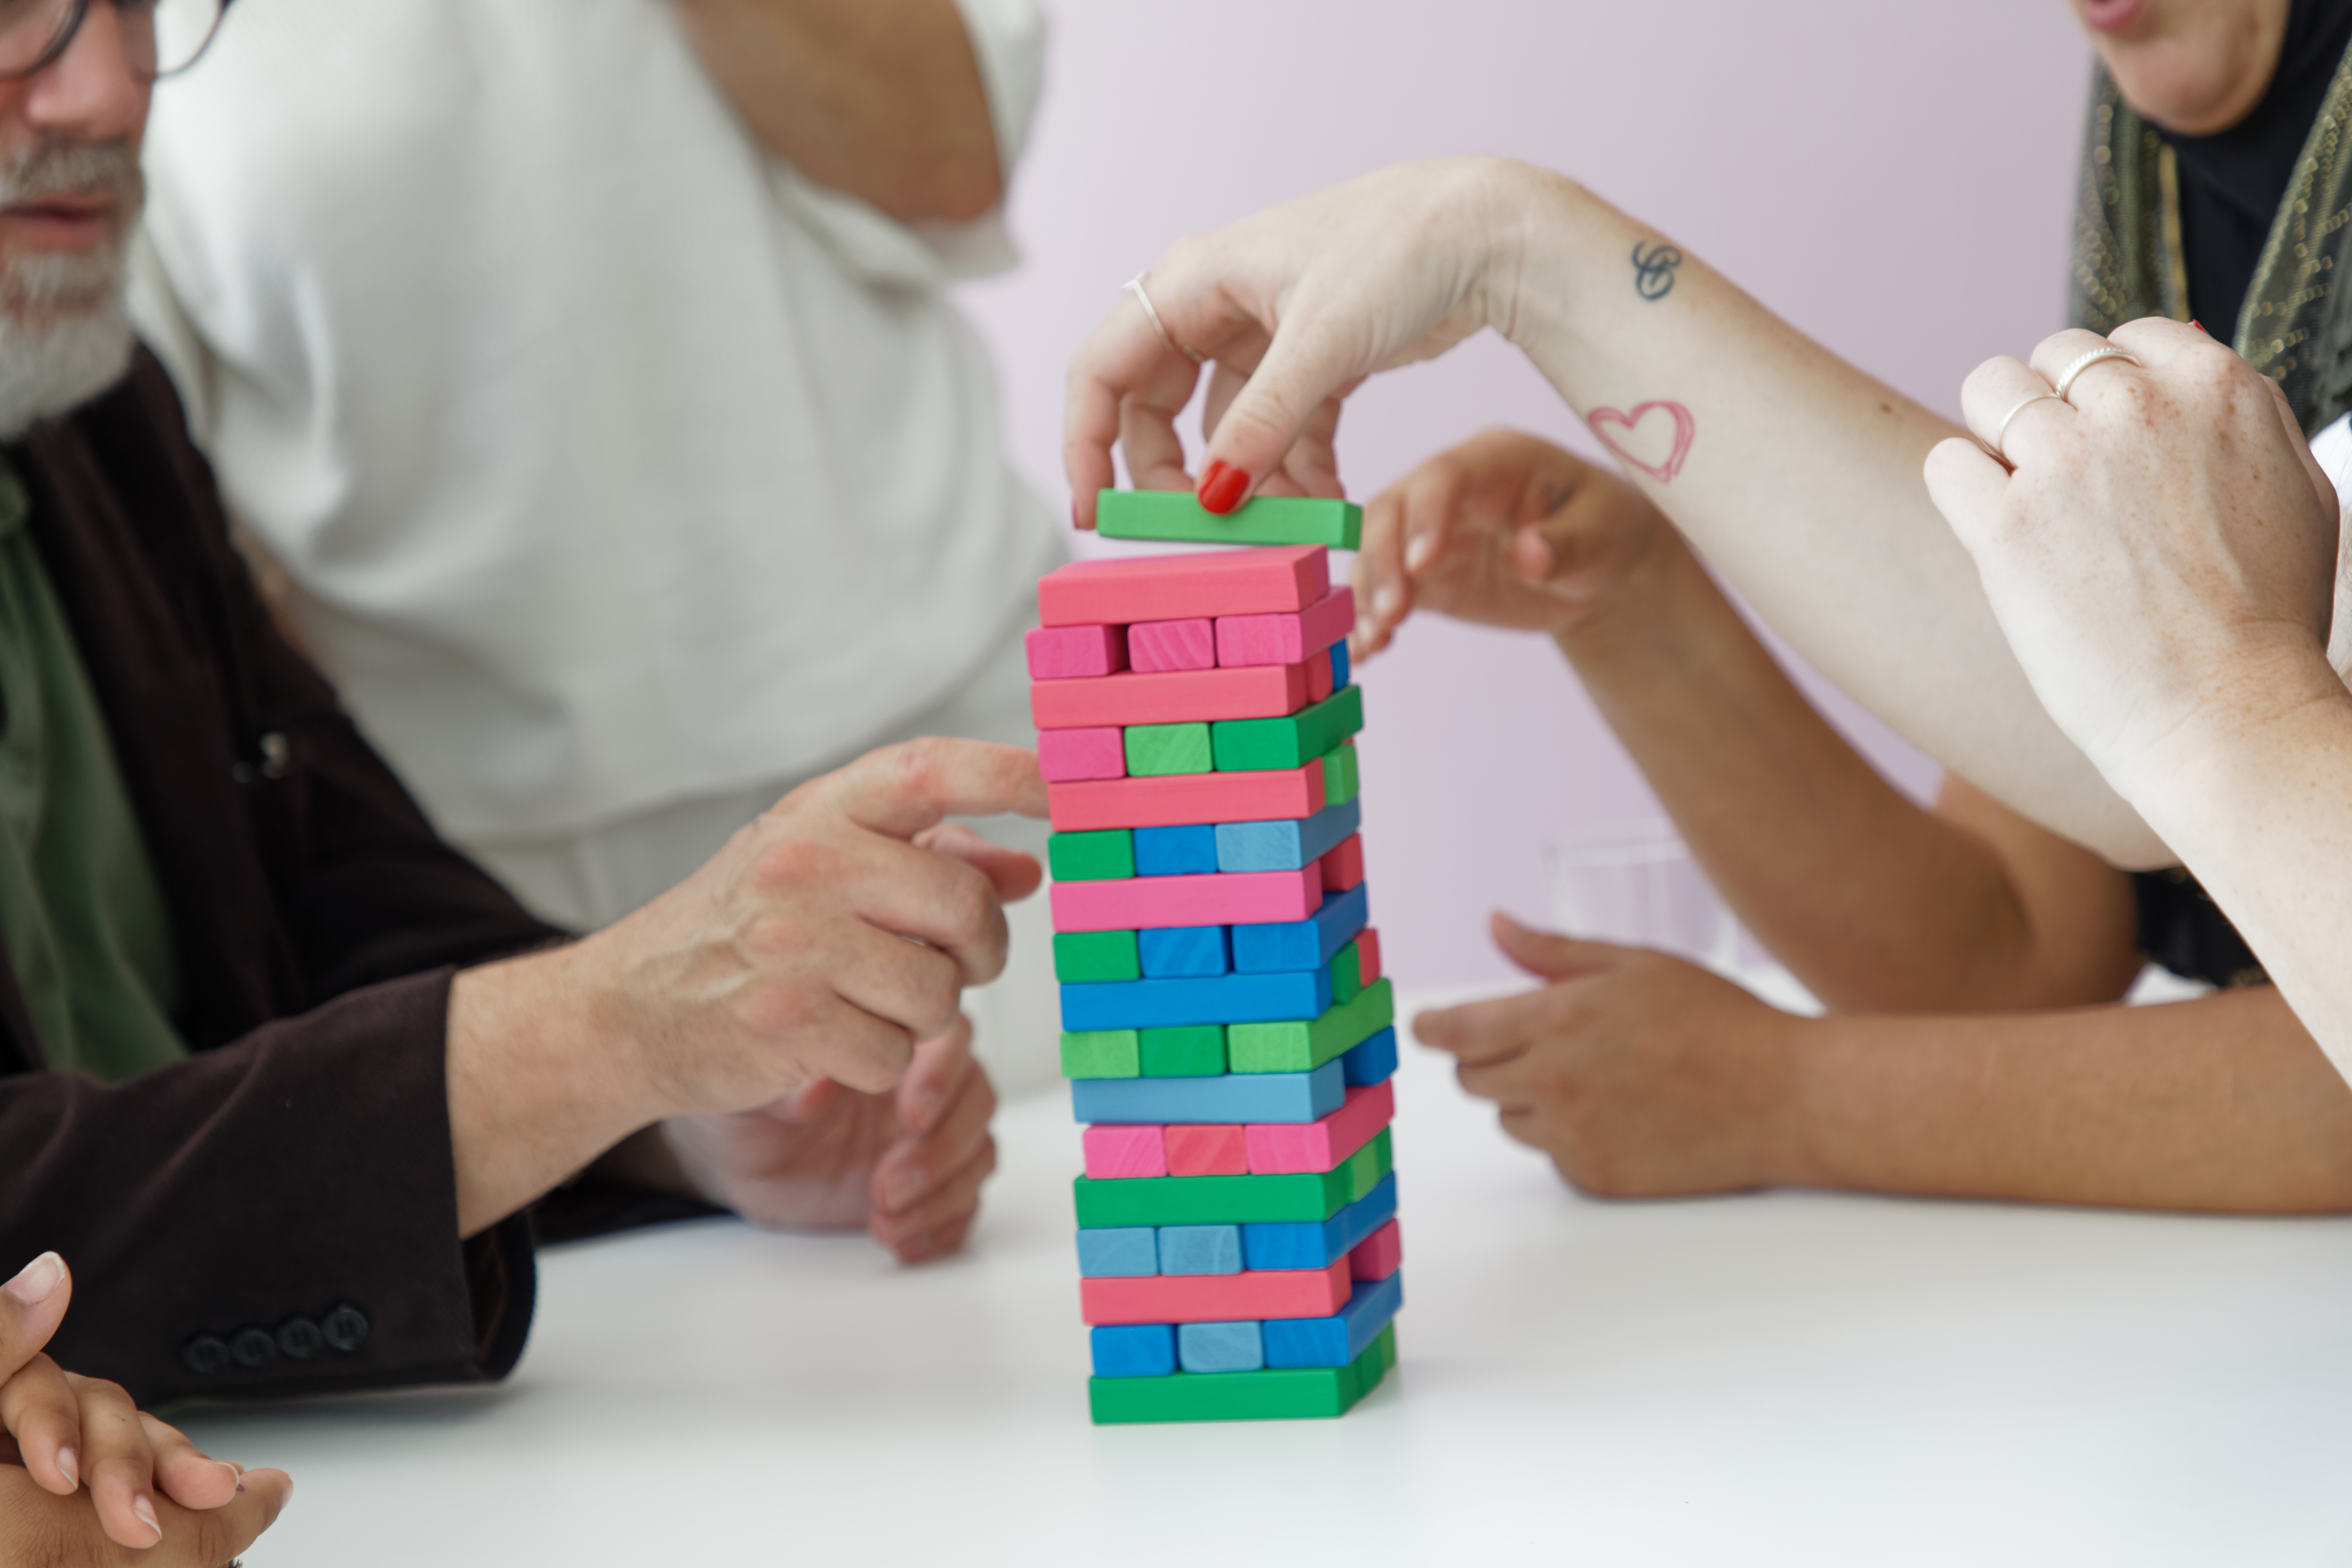 En grupp människor bygger tillsammans ett torn av olikfärgade leksaksklossar.